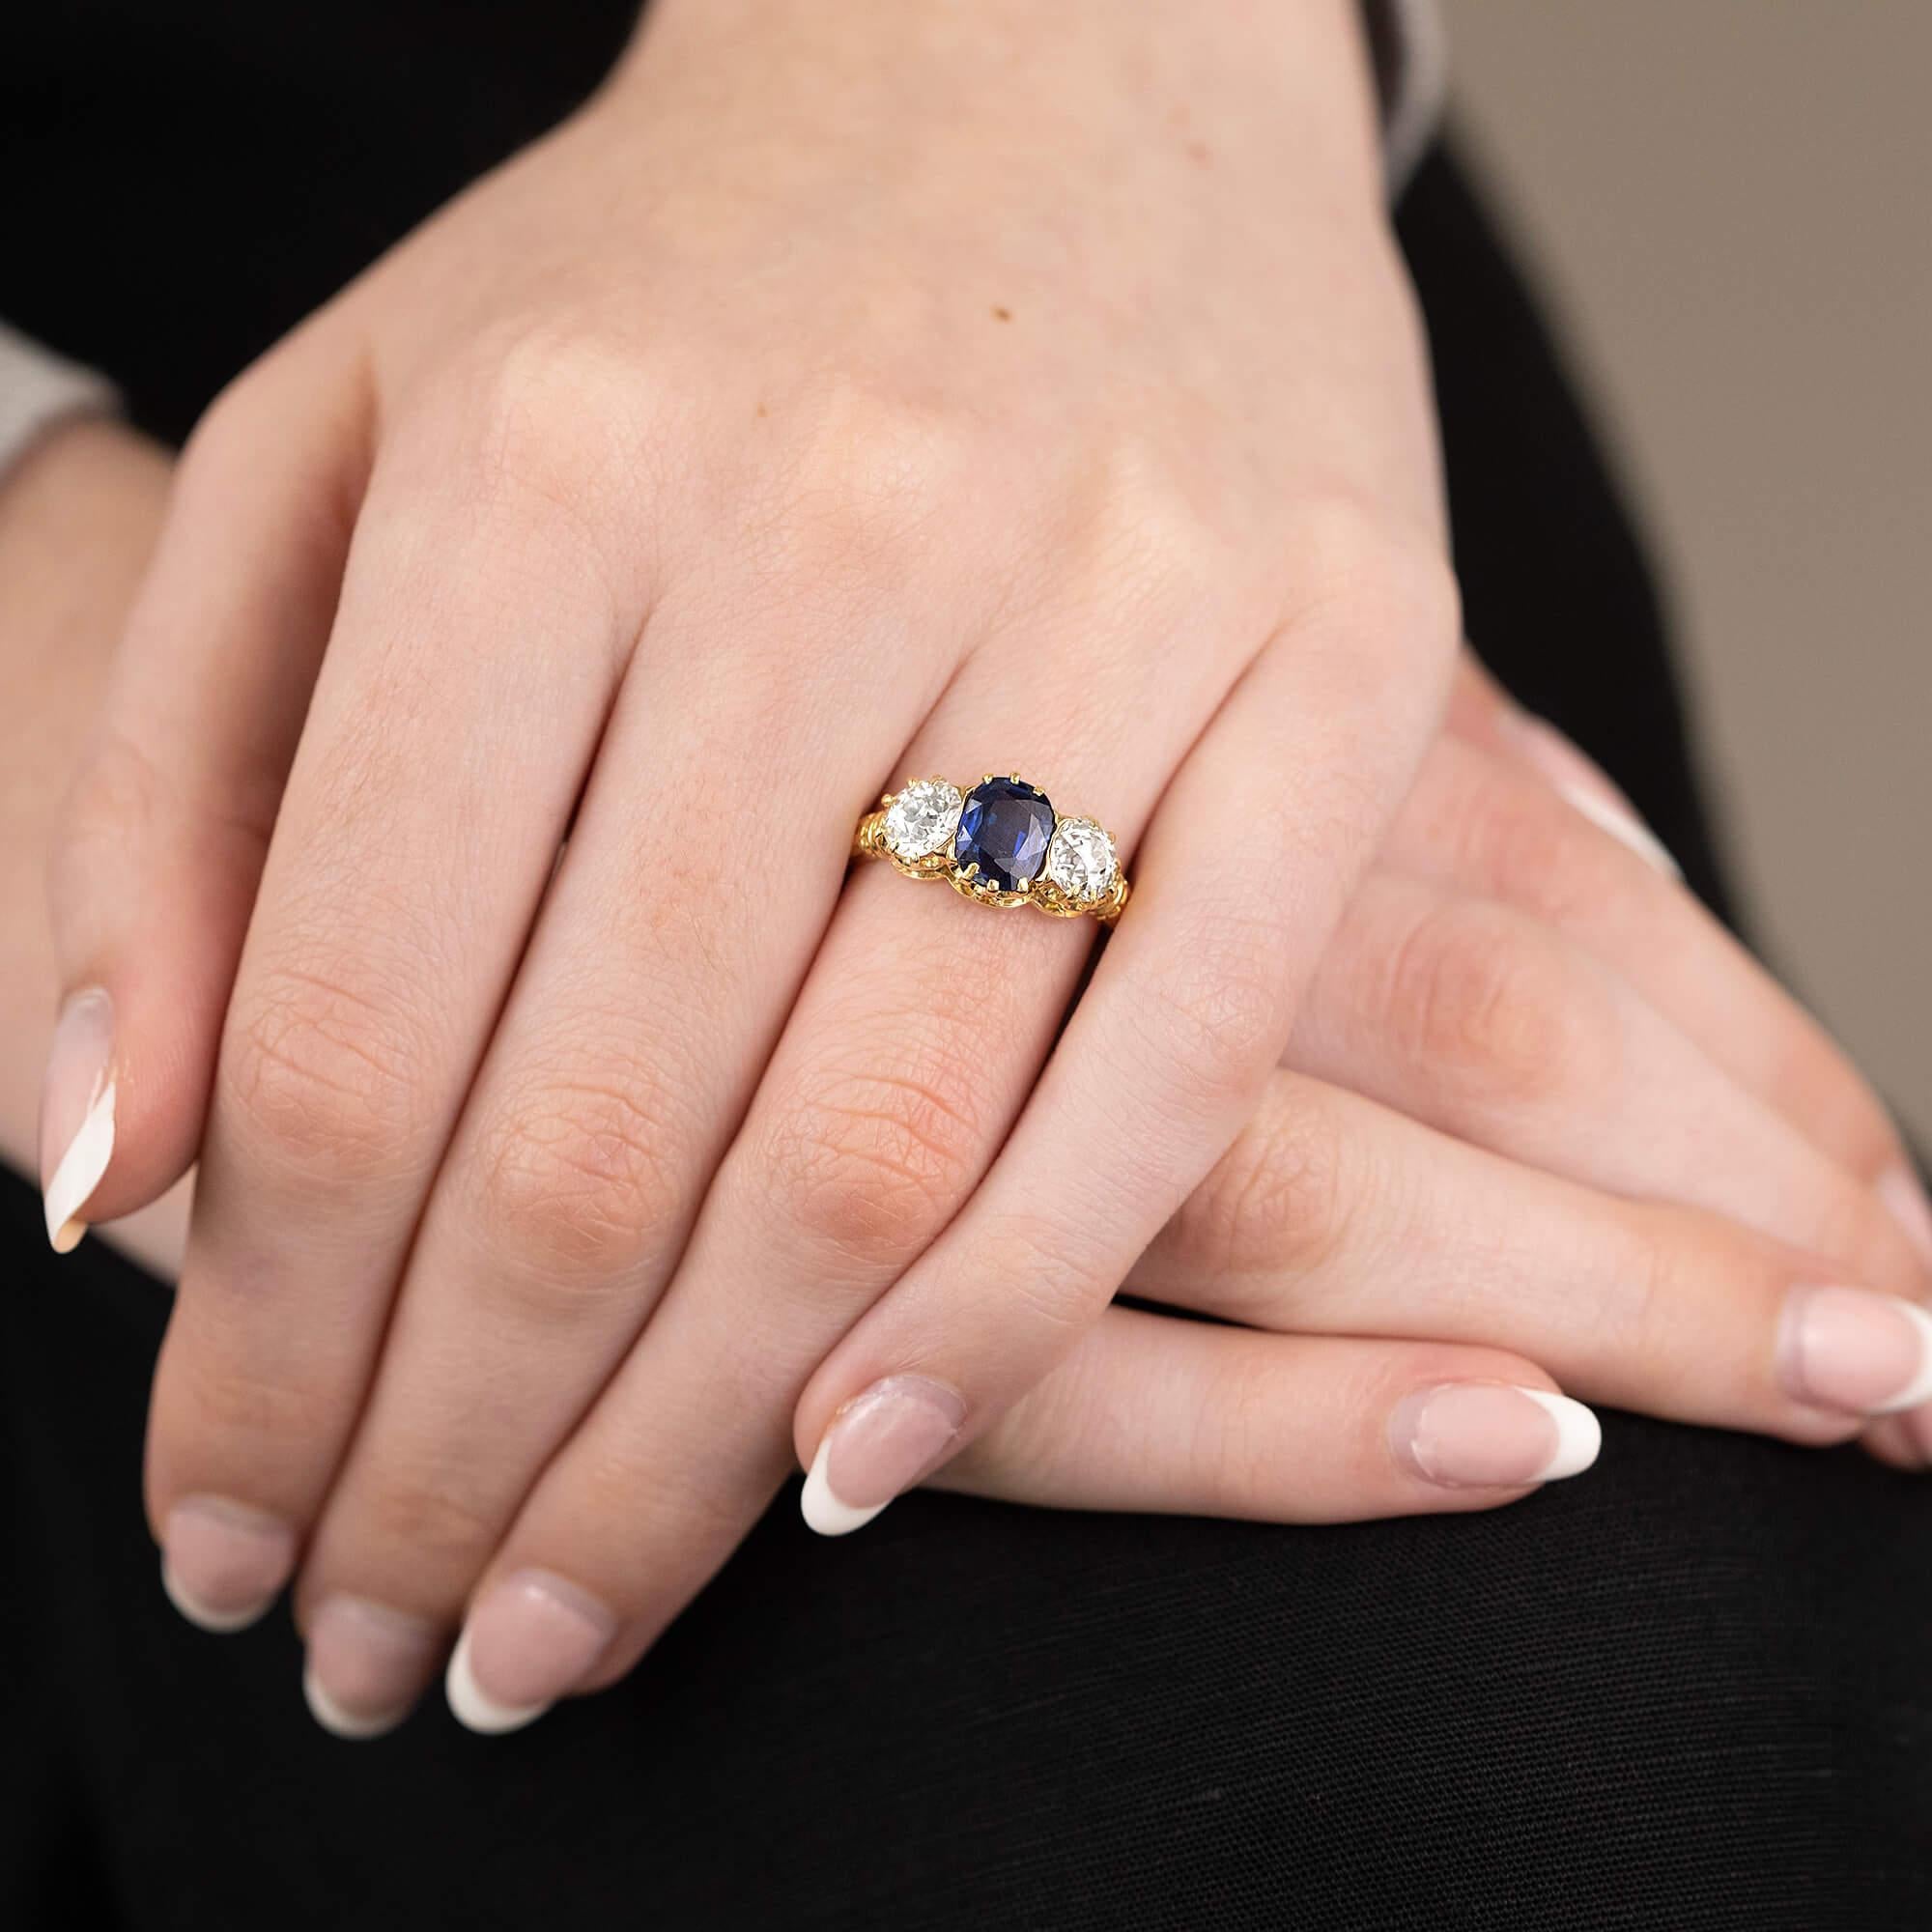 Dieser edwardianische Ring hat eine antike Coronet-Fassung mit drei Steinen, einem ovalen Saphir in der Mitte und zwei Diamanten im frühen europäischen Schliff auf beiden Seiten.

Edelstein: Ein (7,76mm x 4,47mm tief) ovaler, neu polierter feiner